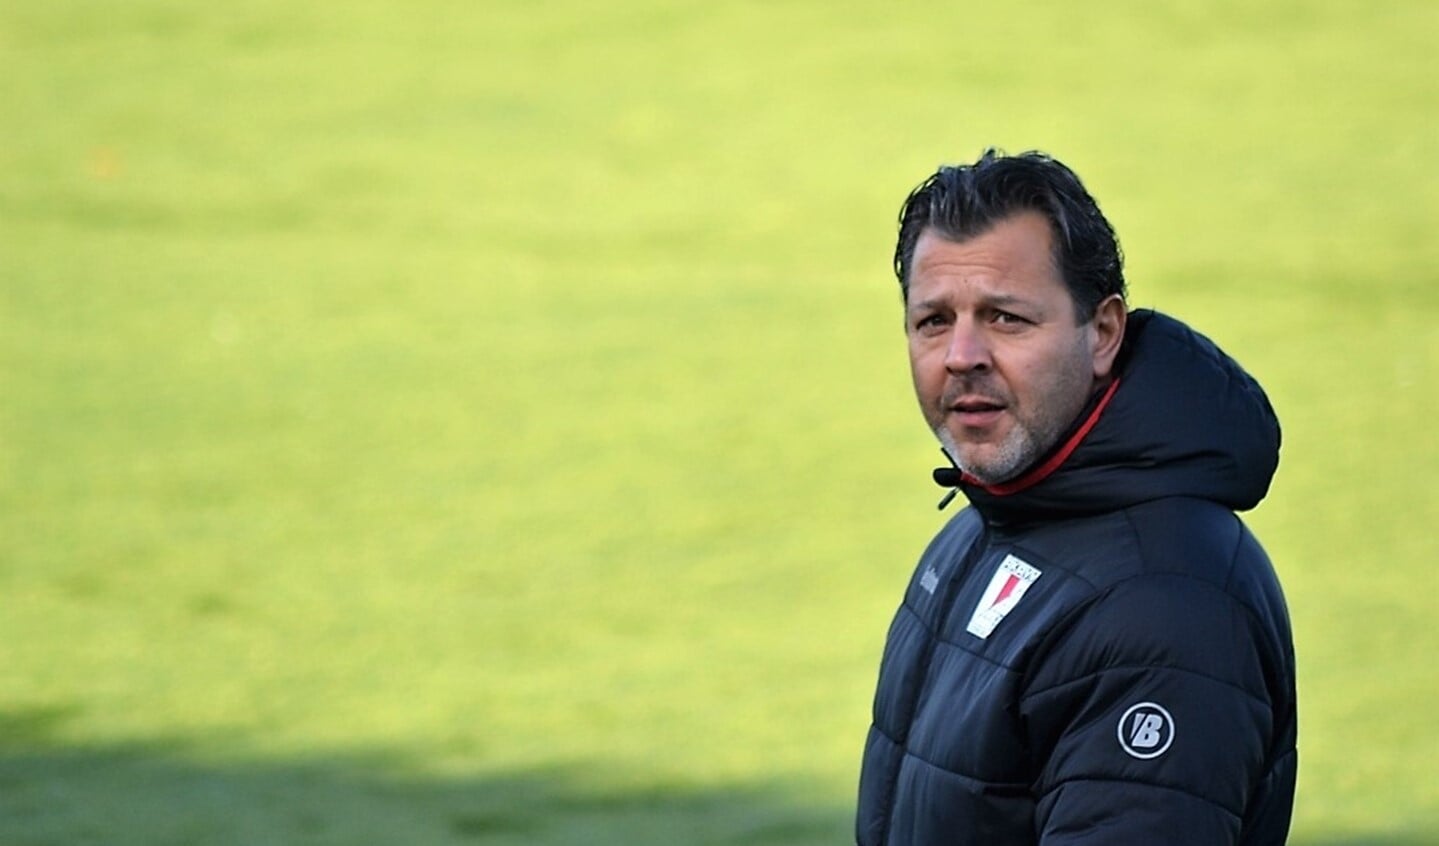 RKAVV en Maurizio Ceccucci zijn overeengekomen dat Maurizio ook het seizoen 2019-2020 de hoofdtrainer van RKAVV is.